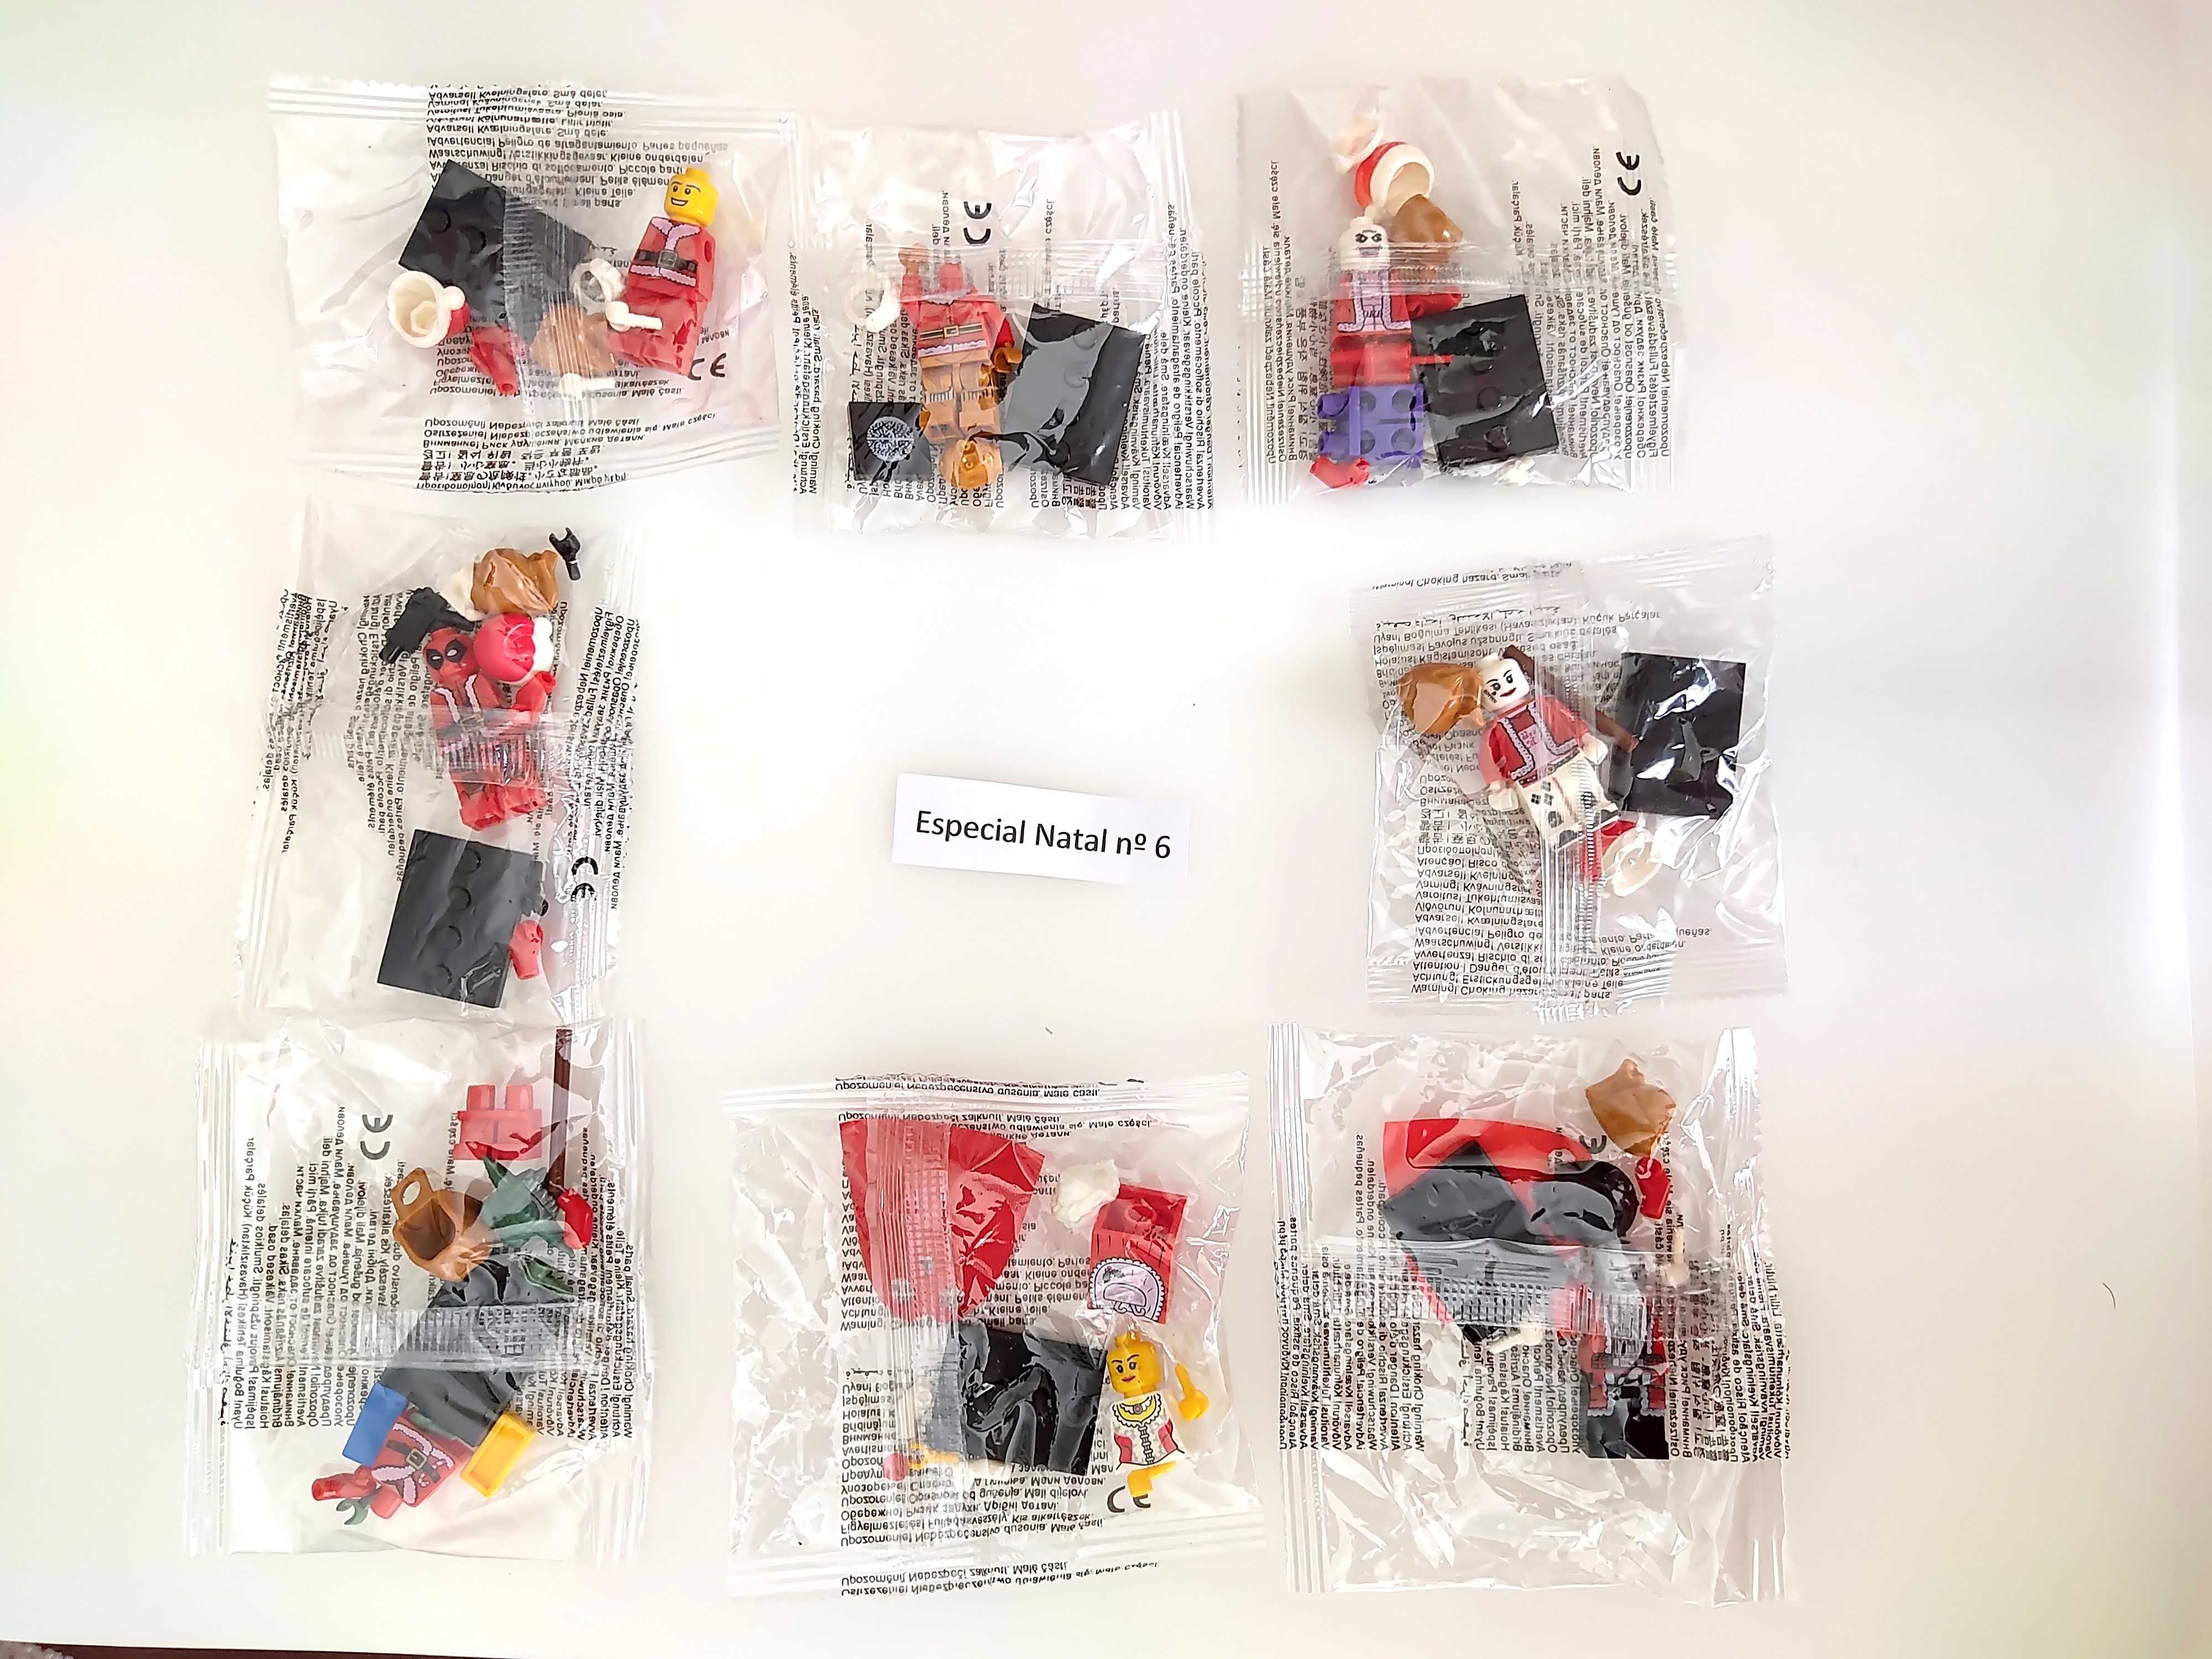 Bonecos minifiguras Especial Natal nº6 (compatíveis com Lego)